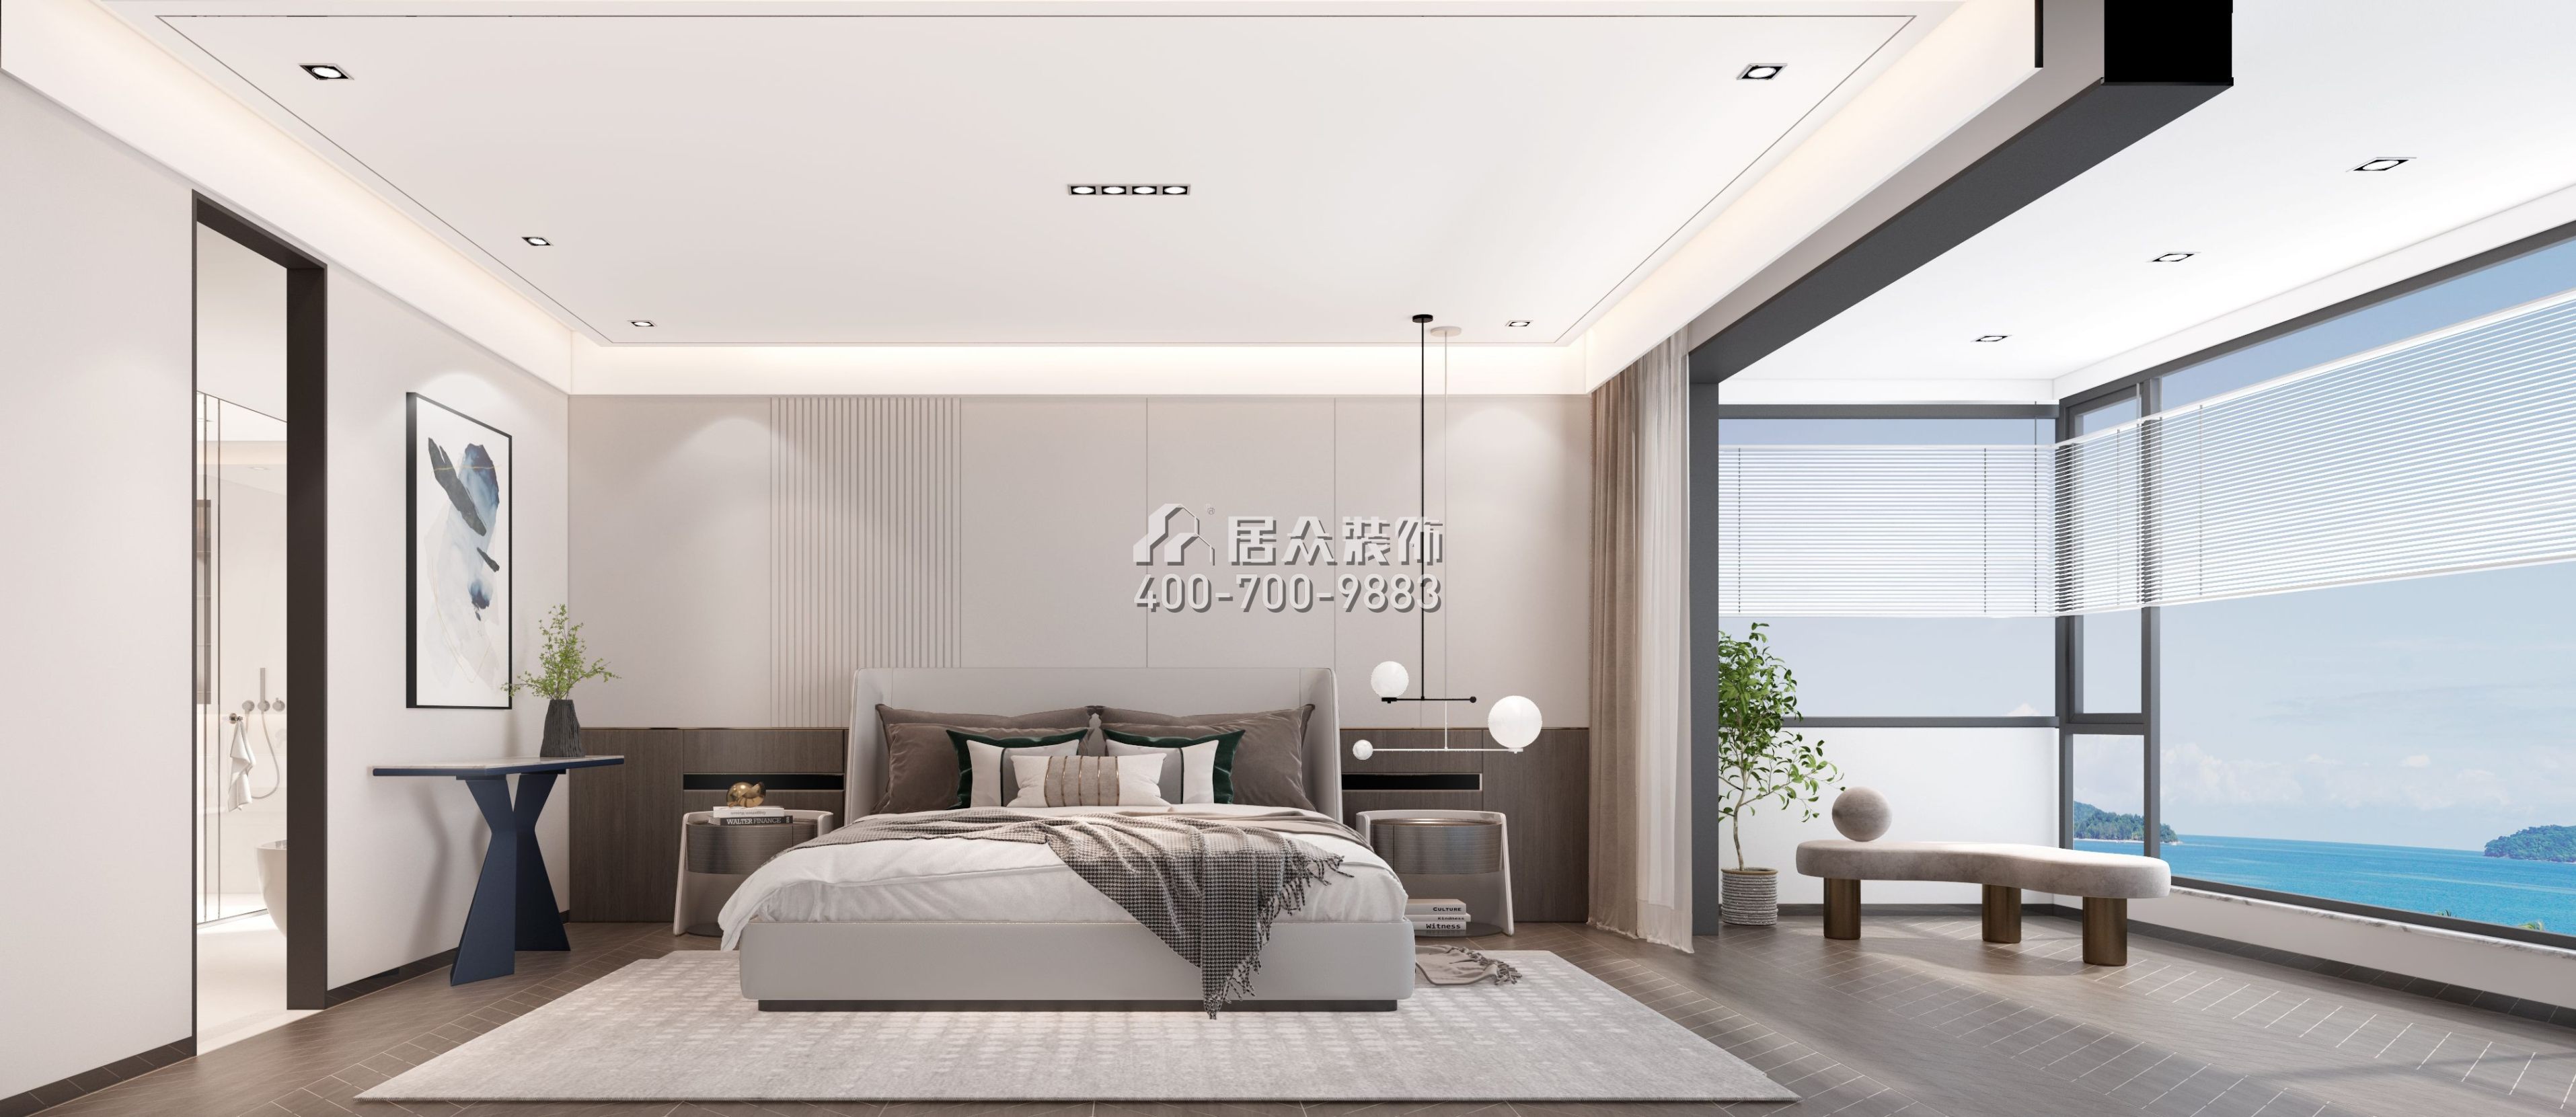 萬科溫馨家園200平方米現代簡約風格平層戶型臥室裝修效果圖